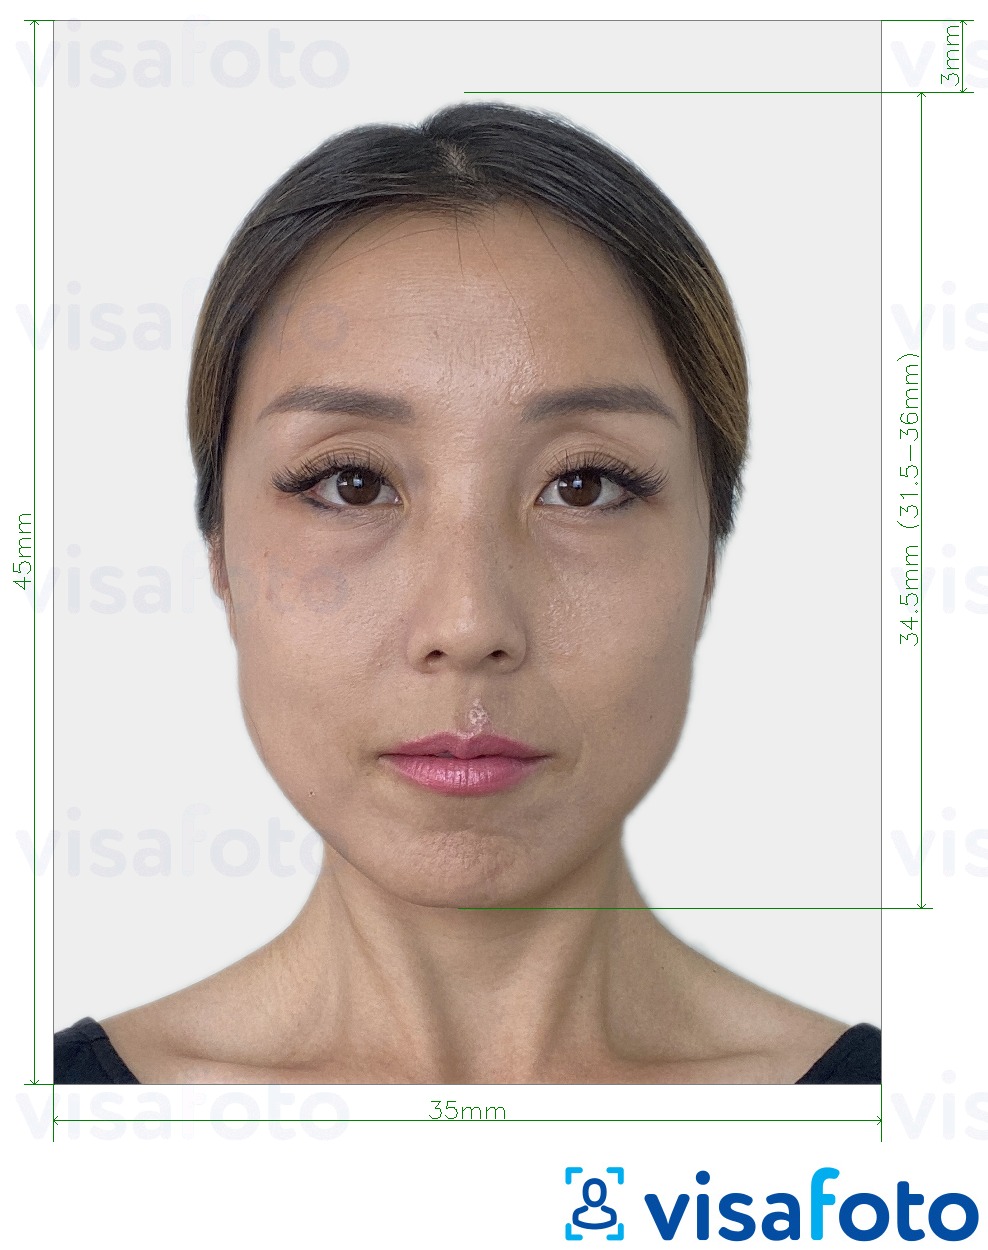 Exemplo de foto para Coreia do Sul Visa 35x45 mm (3.5x4.5 cm) com especificação exata de dimensão